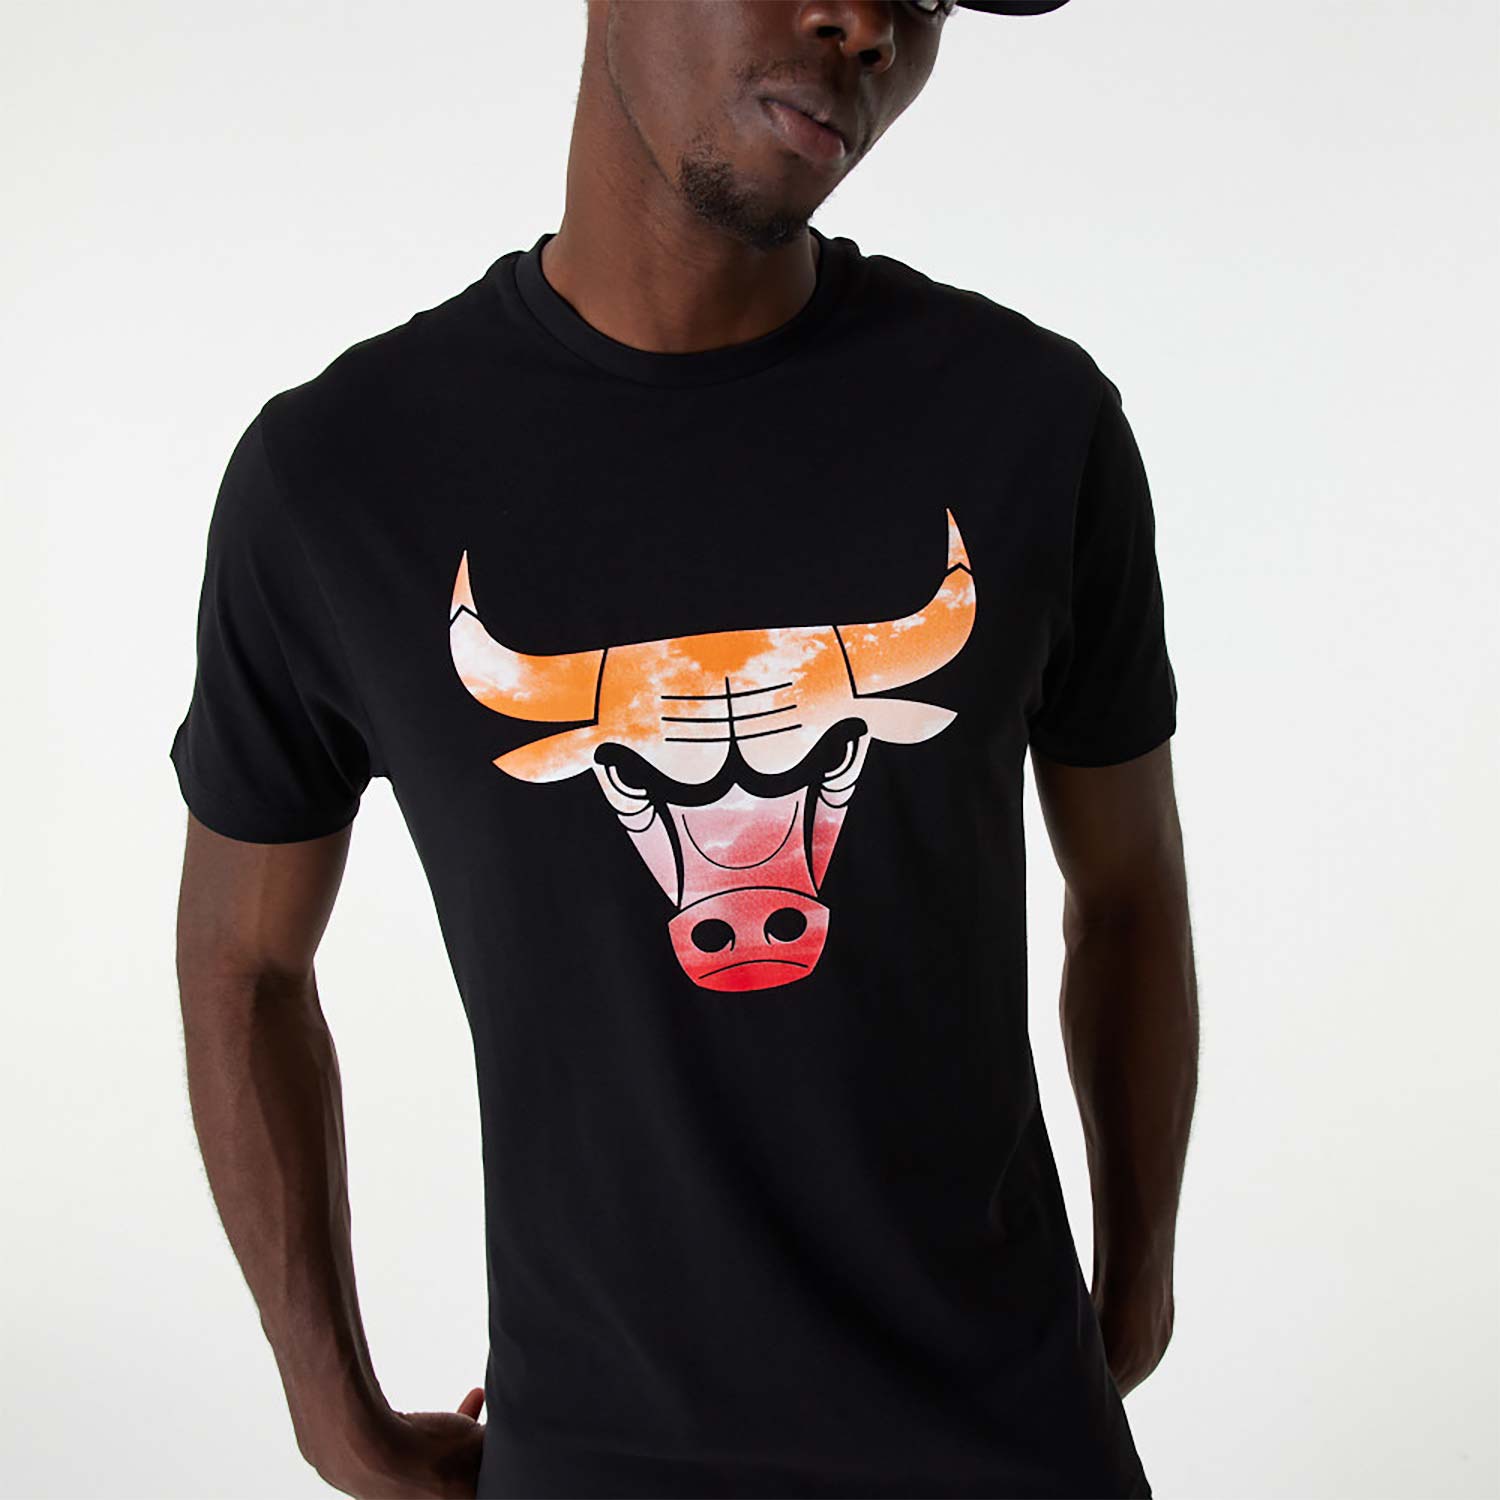 NEW NBA Chicago Bulls Black T-Shirt Red Bull Checkered Flag for